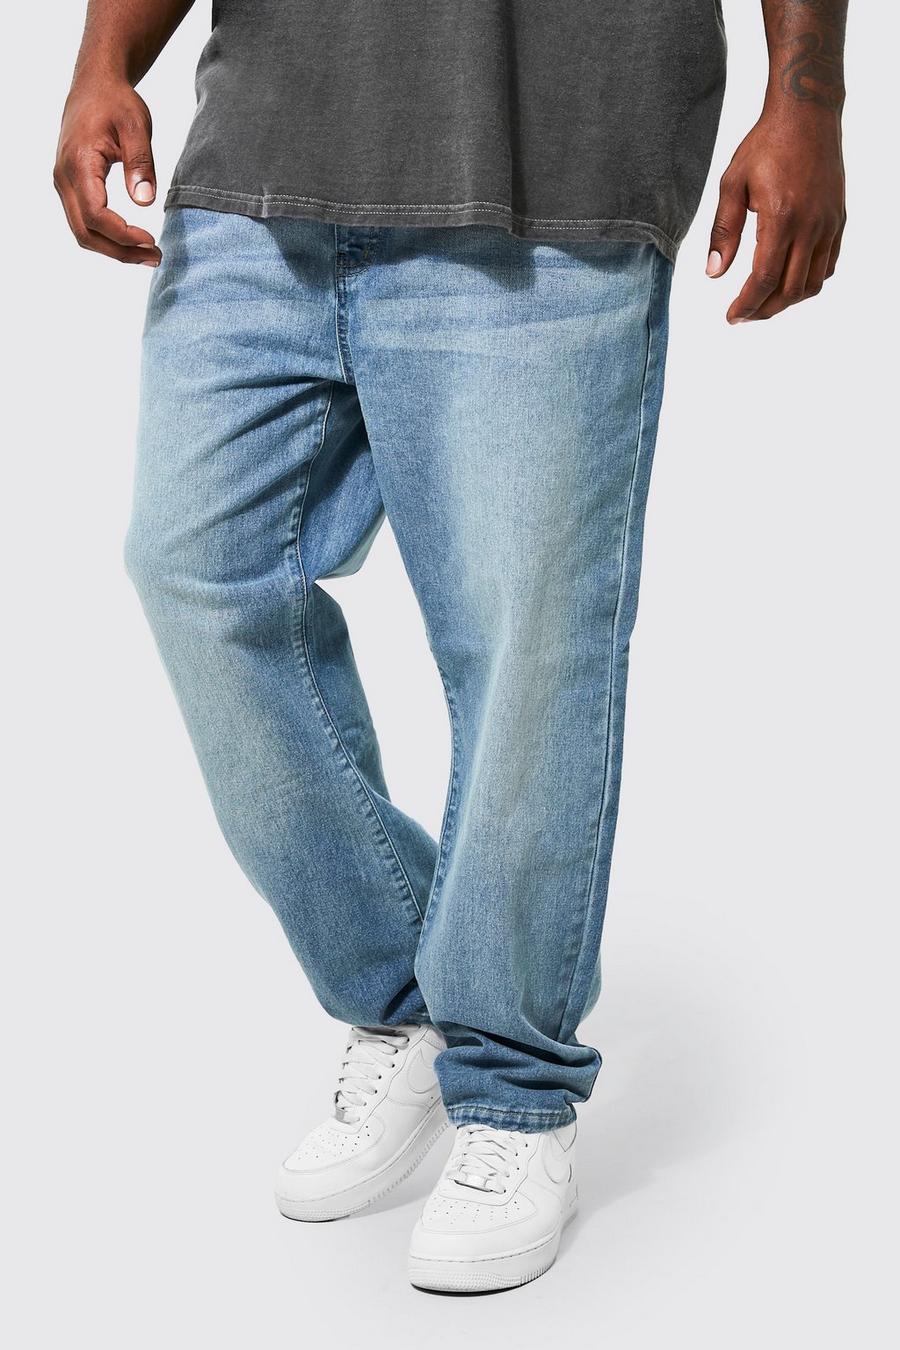 כחול ביניים מכנסי ג'ינס מבד קשיח בגזרה צרה, מידות גדולות